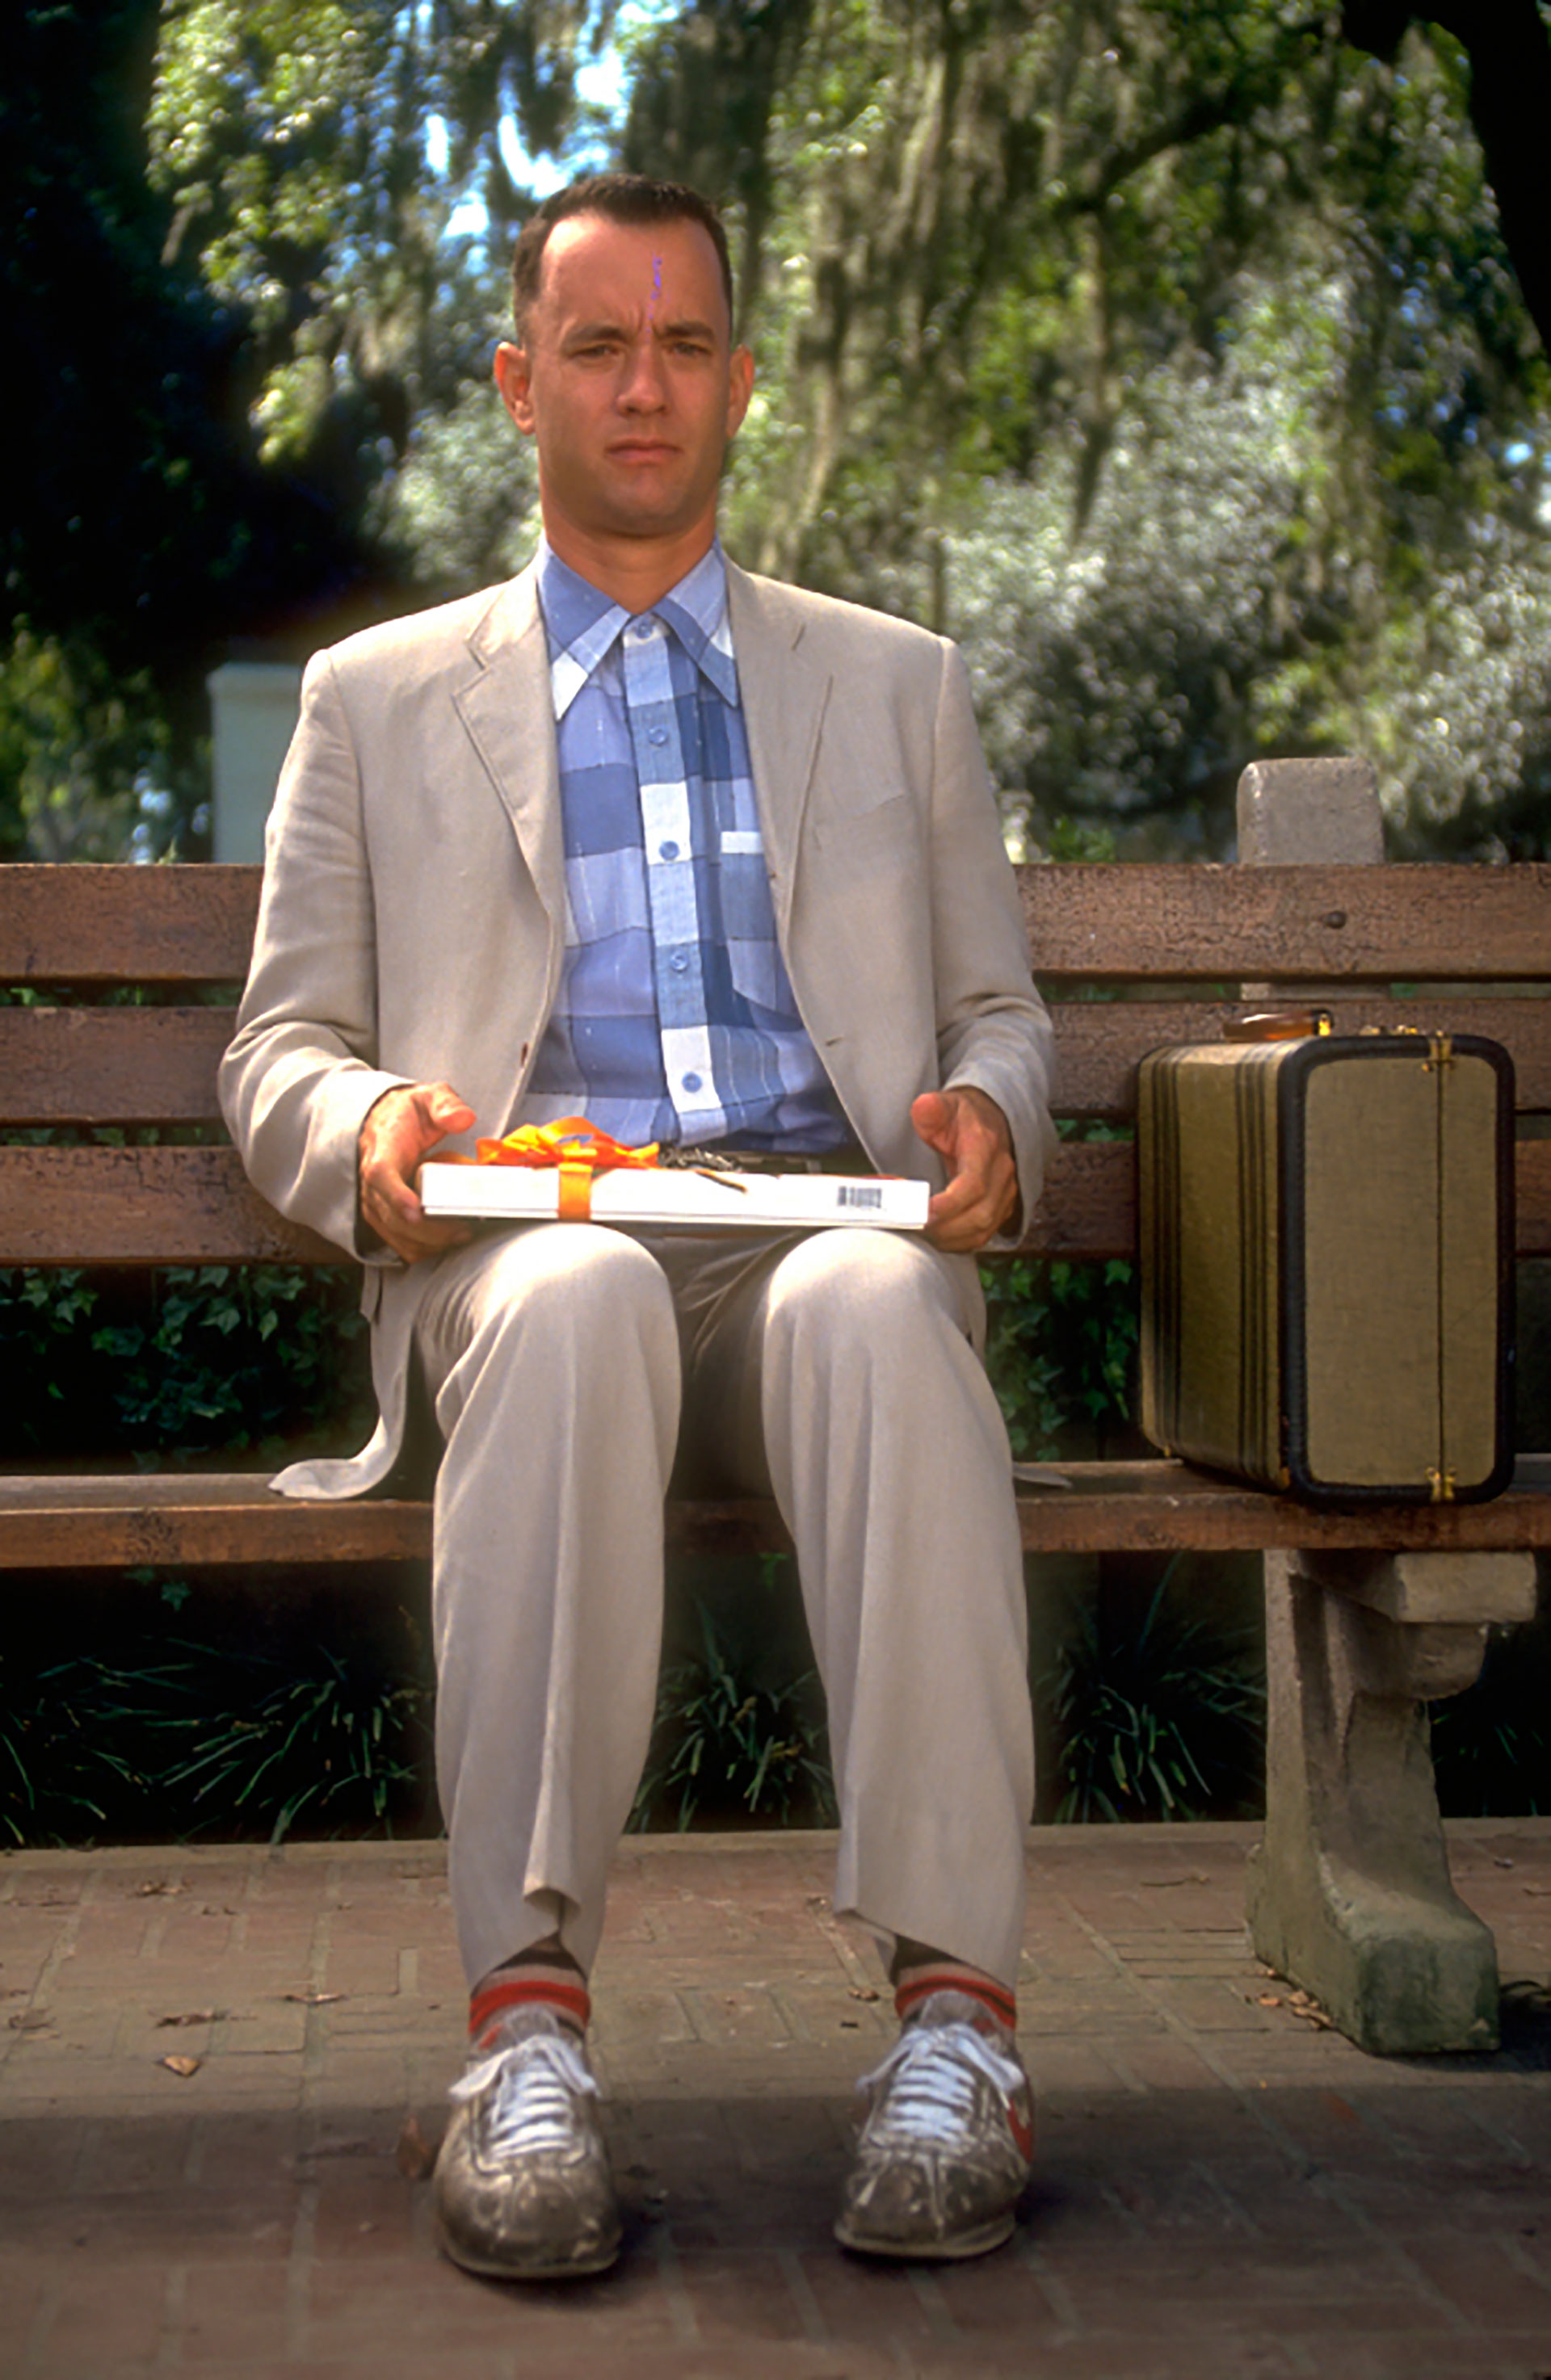 Tom Hanks como protagonista de la cinta "Forrest Gump". Una de las escenas más emblemáticas del filme, sentado en la silla de un parque, esperando a su novia, hablando con un extraño.